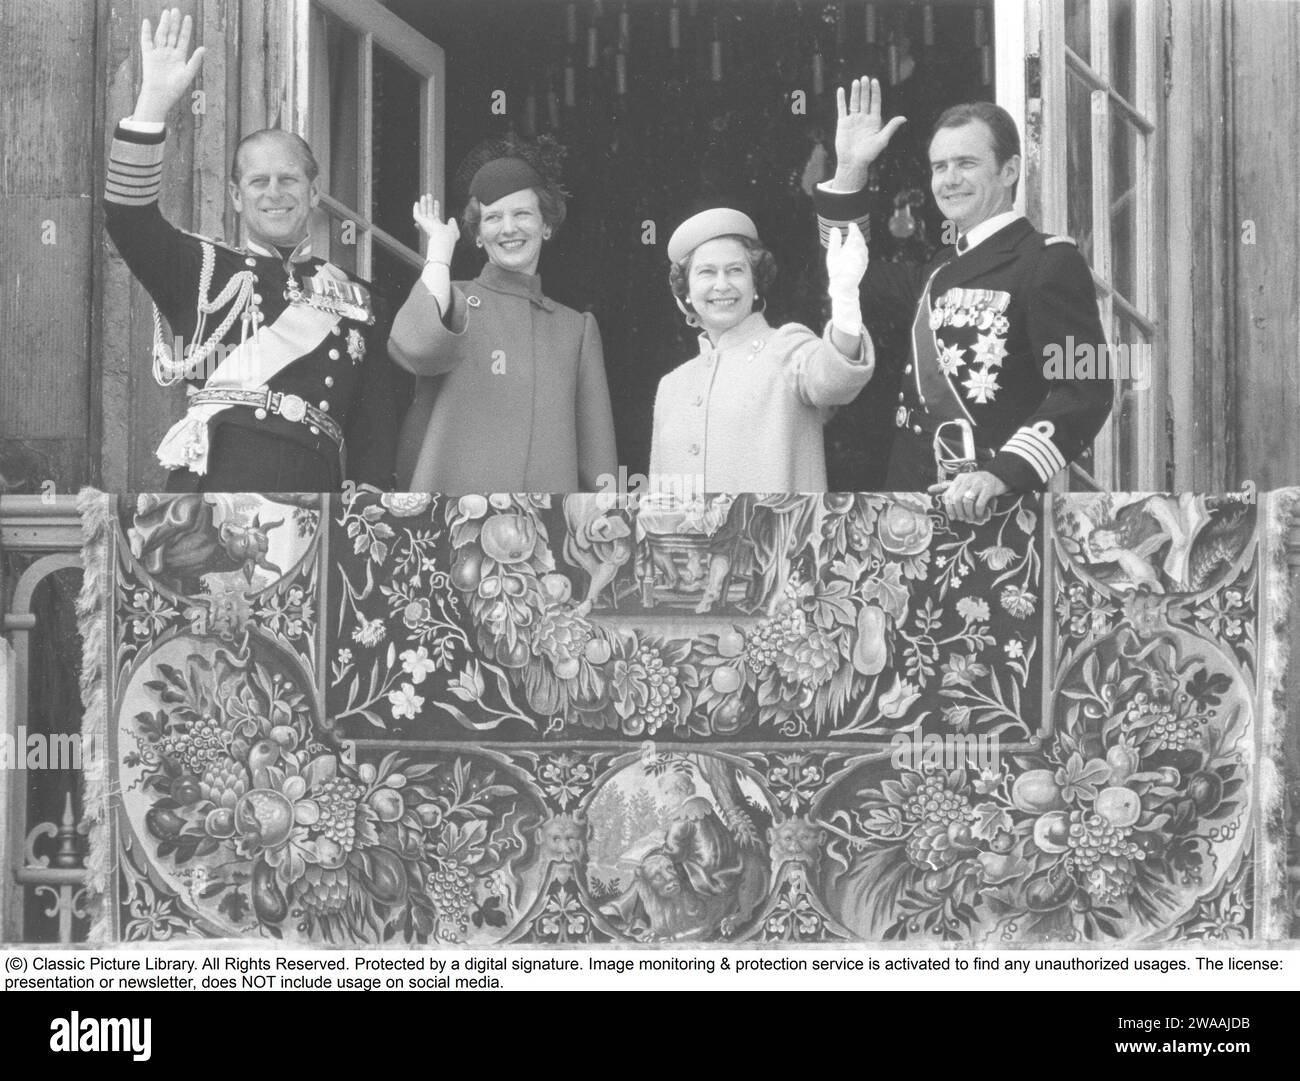 Königin Margrethe II. Von Dänemark. Englands Königin Elisabeth II. Mit ihrem Ehemann Prinz Philip, Herzog von Edinburgh, auf einem Staatsbesuch in Dänemark im Jahr 1979 und mit der dänischen Königin Margrethe und ihrem Ehemann Prinz Henrik auf Schloss Fredenborg Stockfoto